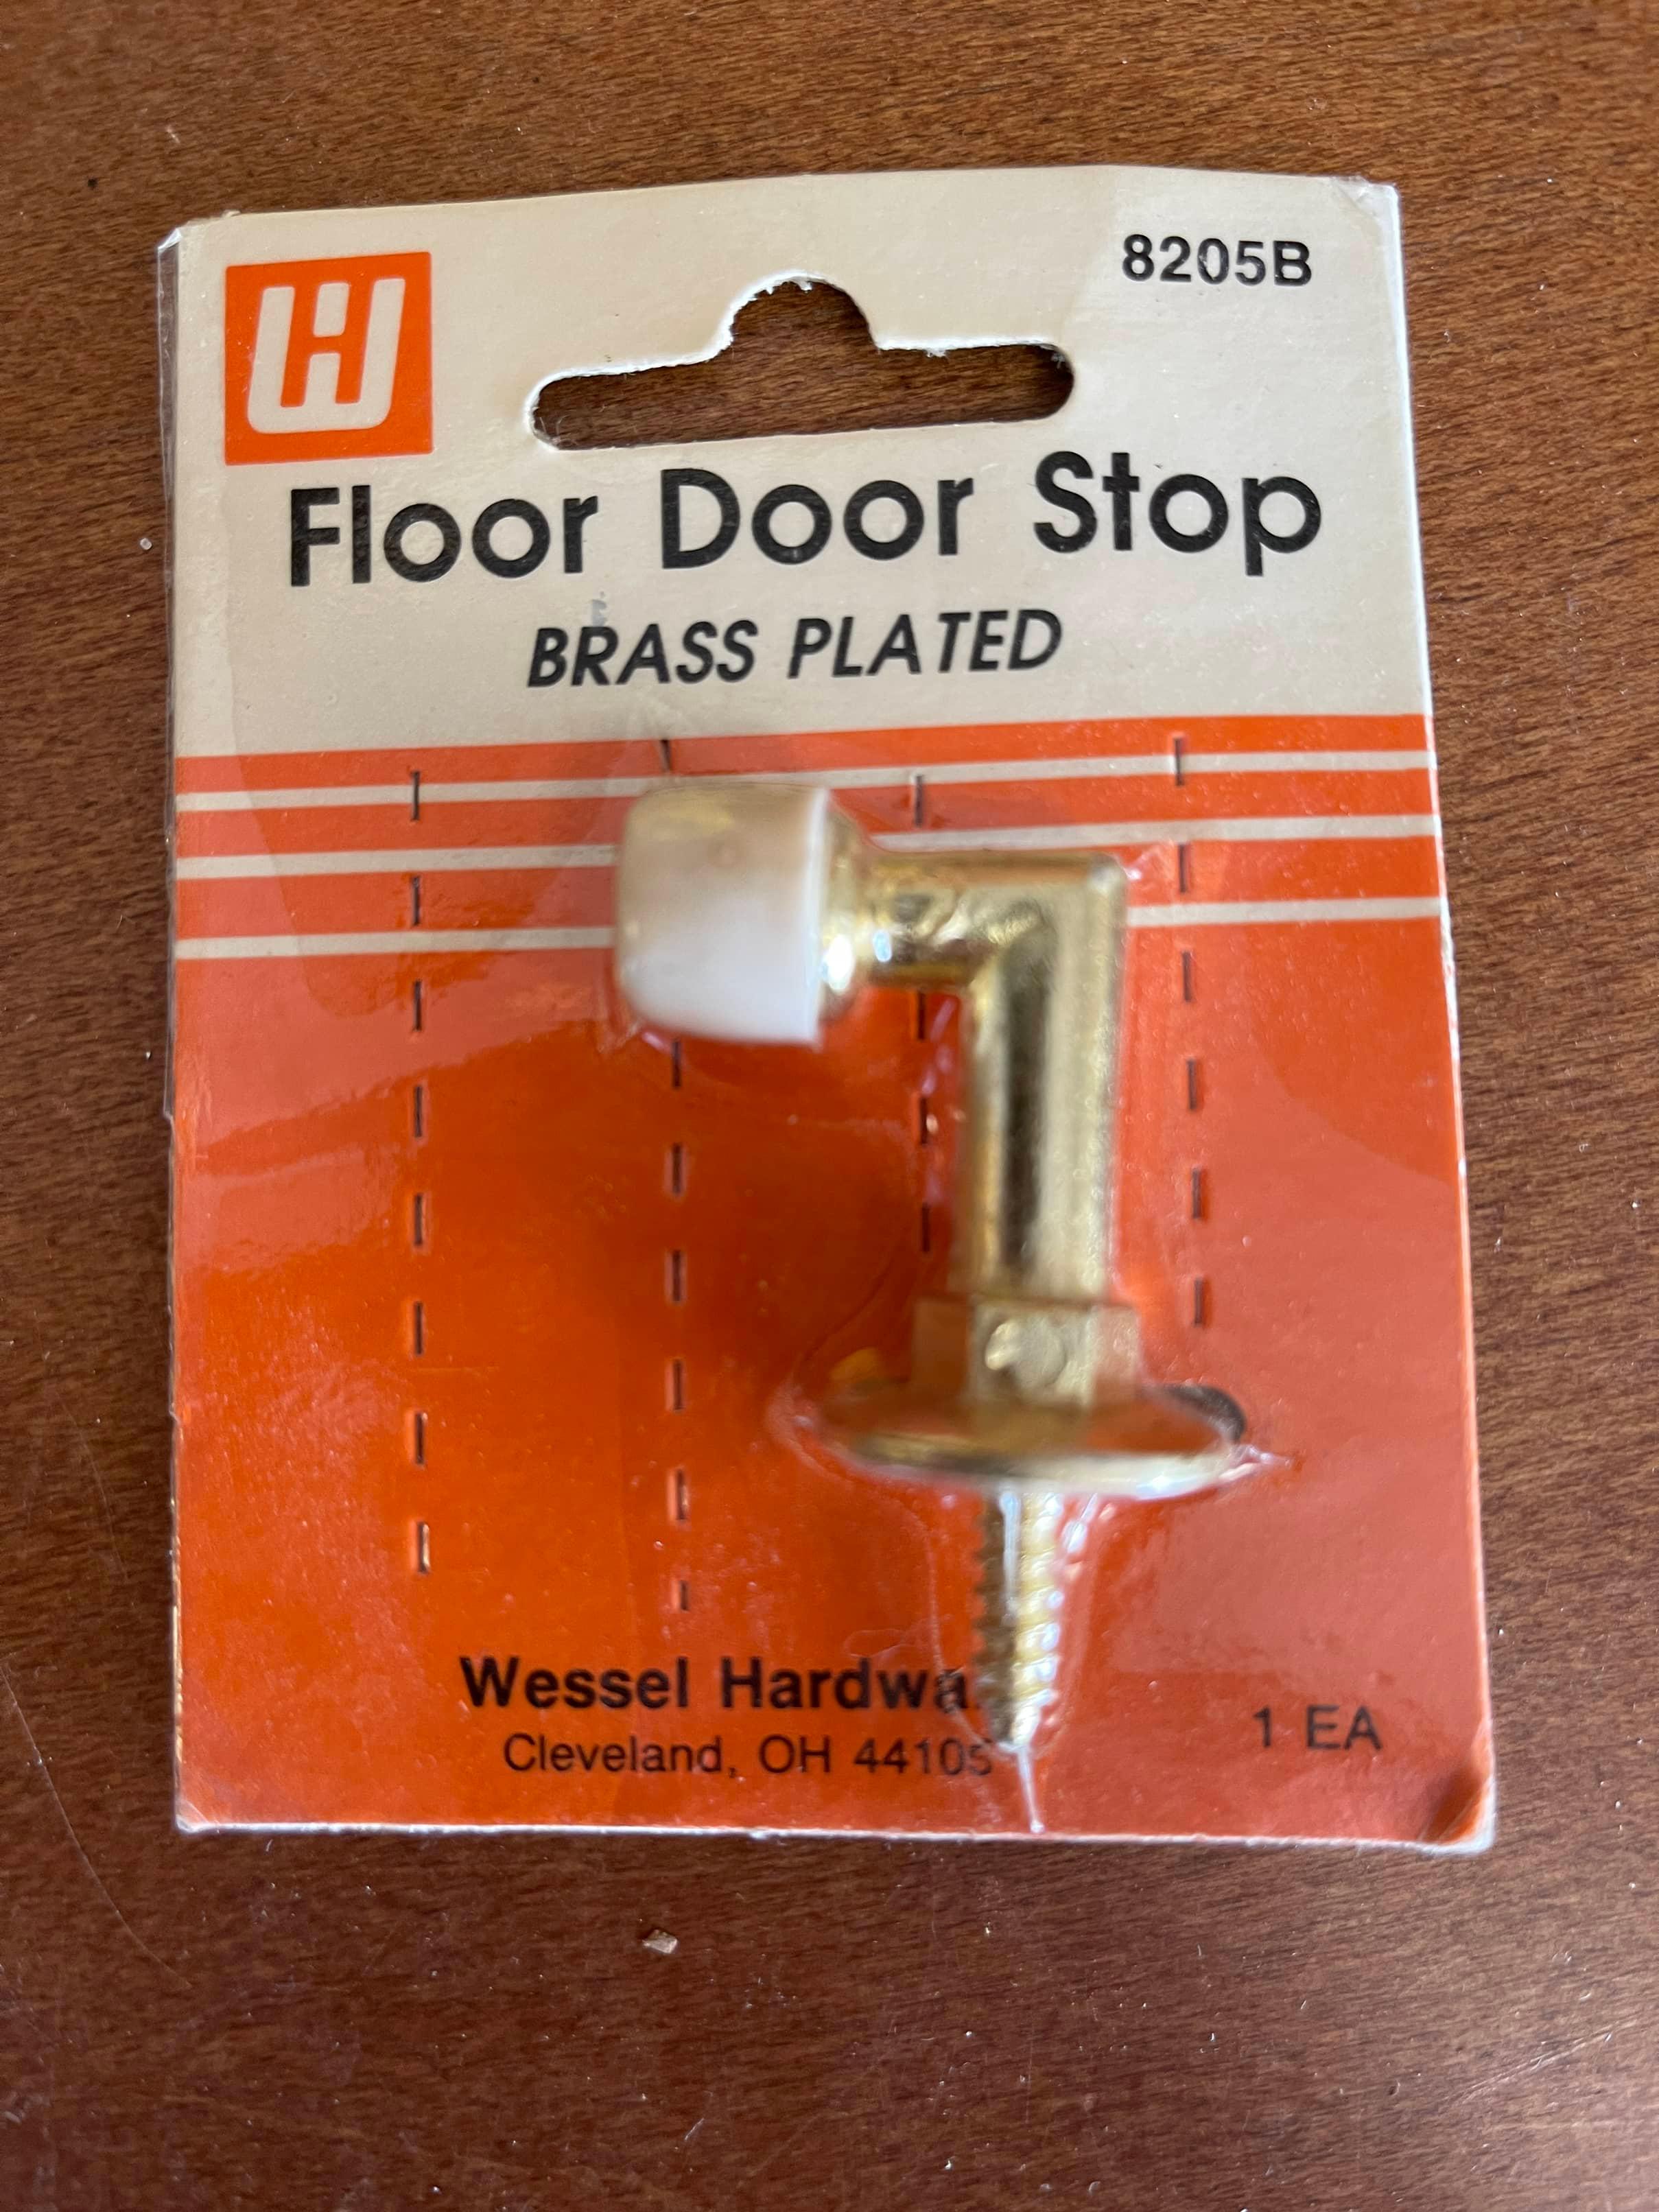 4 Items NEW 2 4 Pieces Brass Door Stops A-1 Tools & 2 Floor Door Stop Brass Plated by Wessel Hardwar